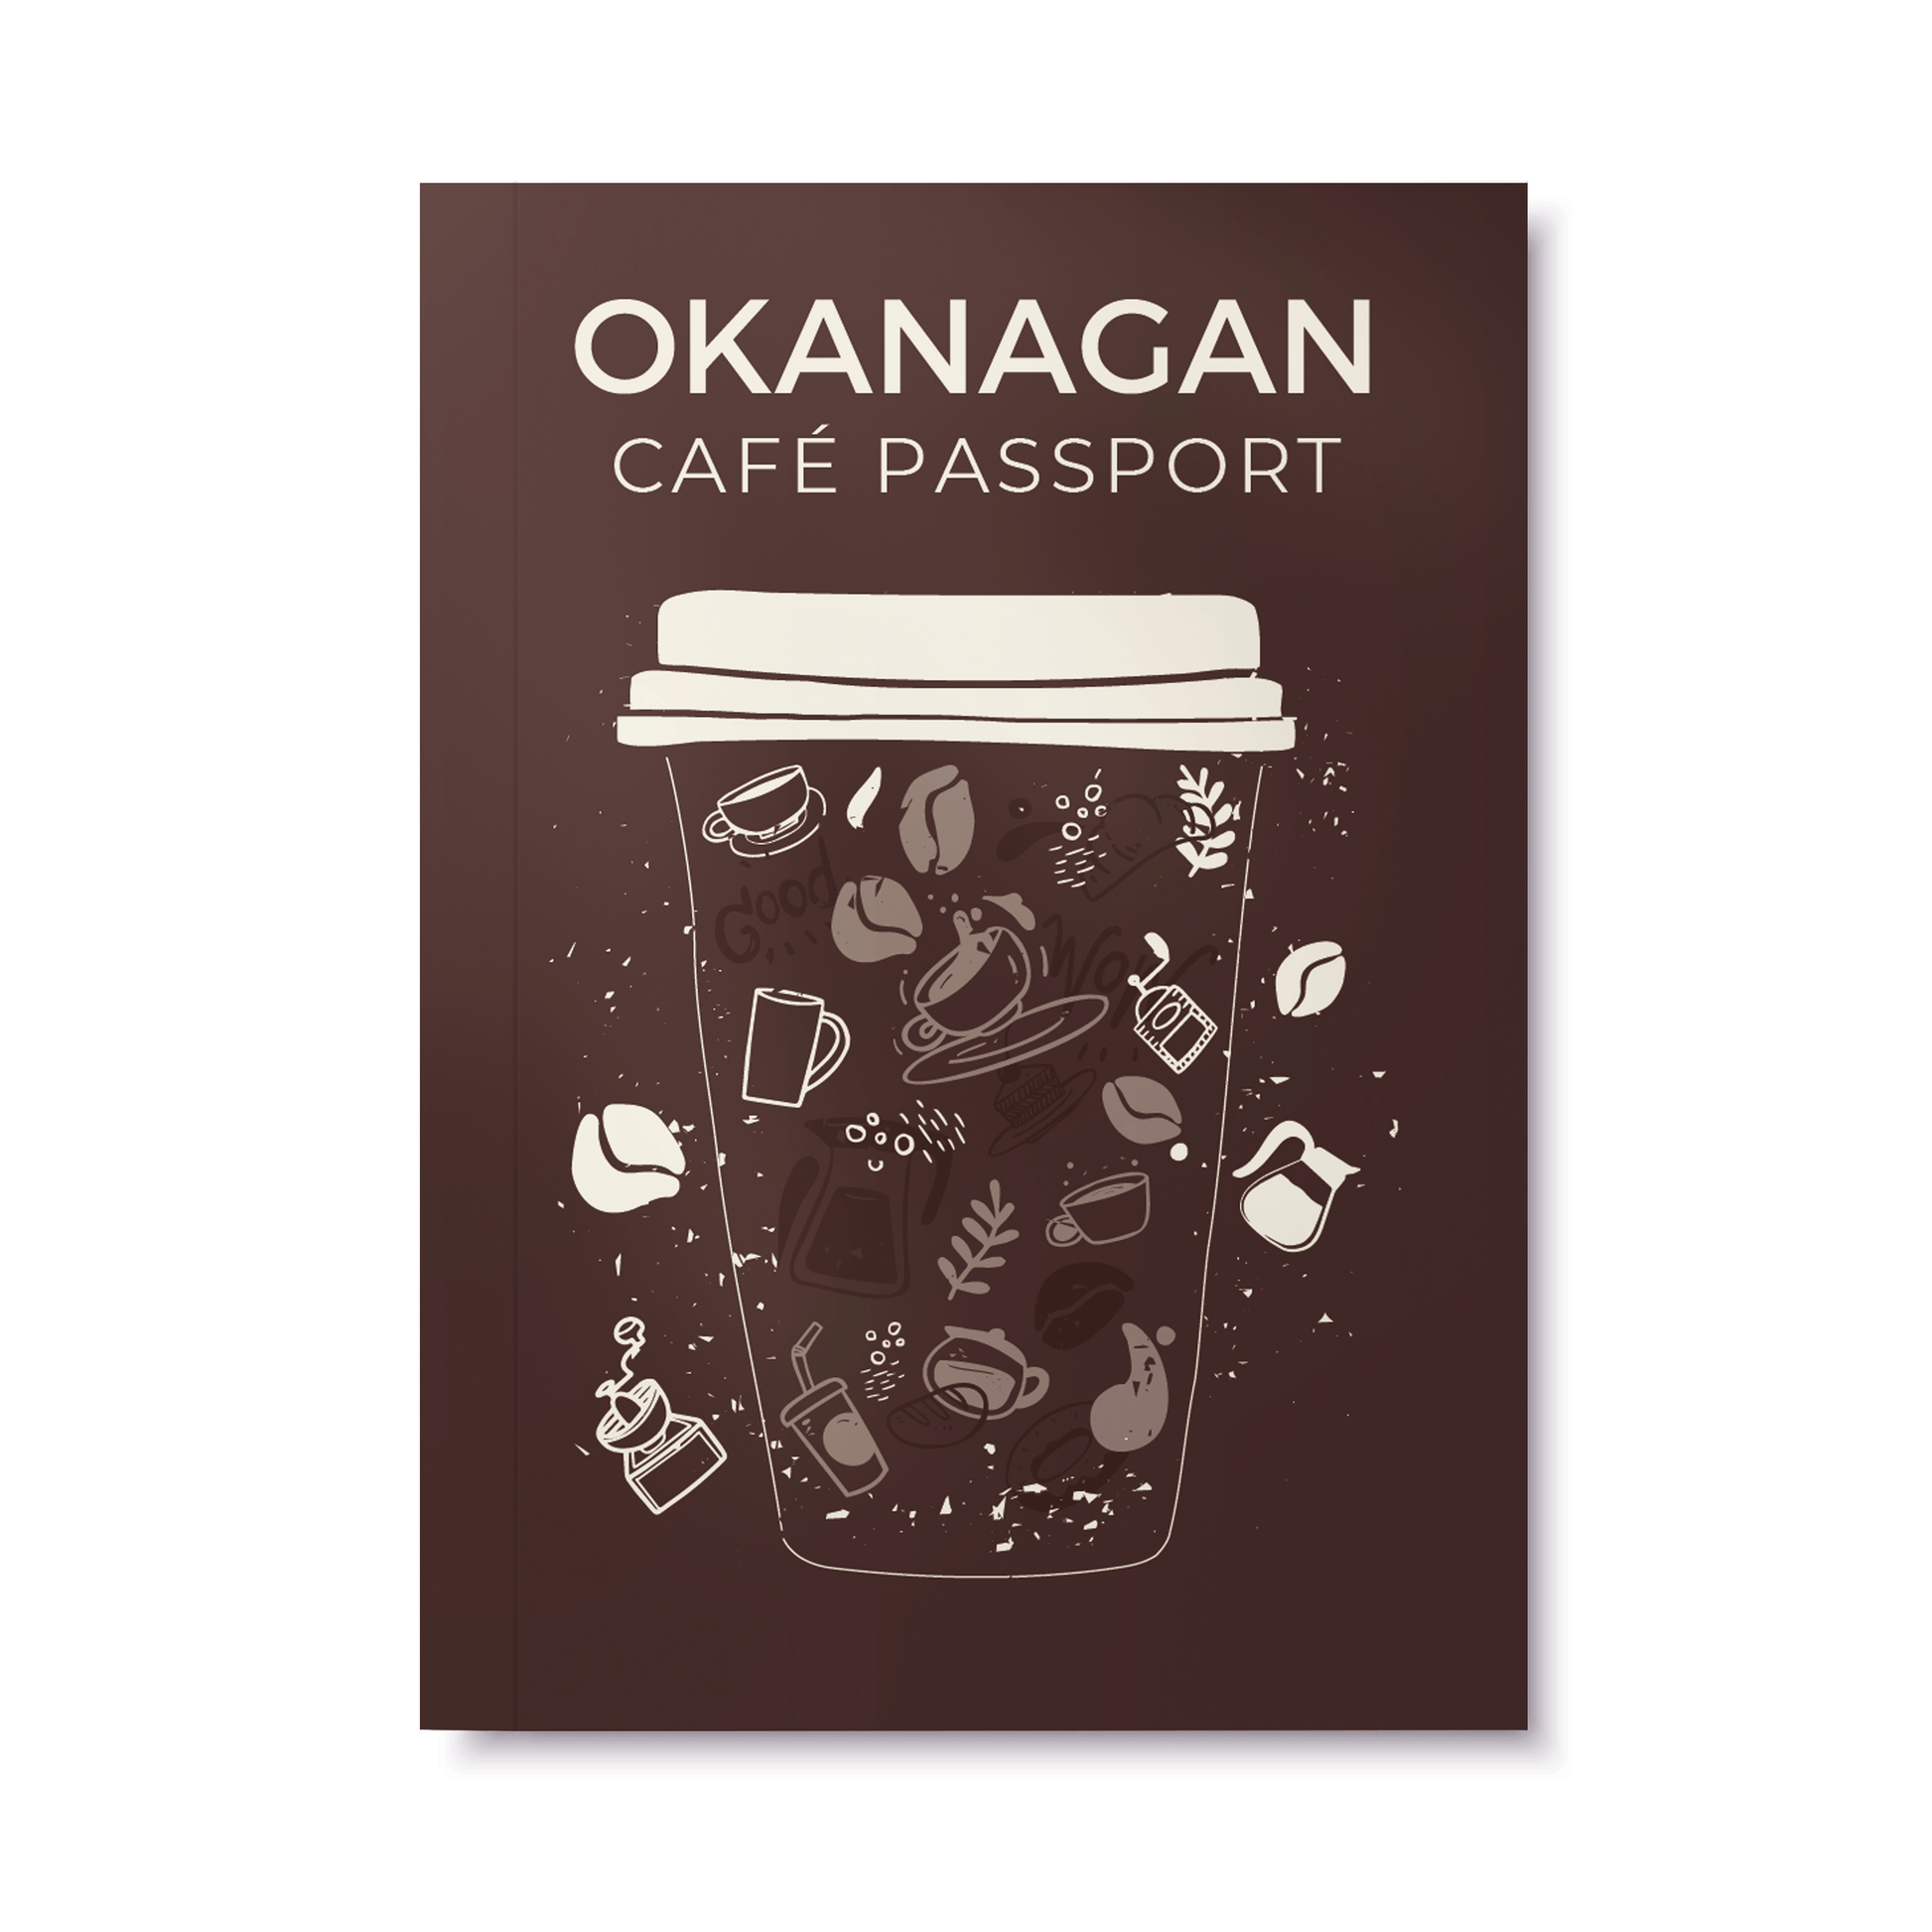 Okanagan Cafe Passport